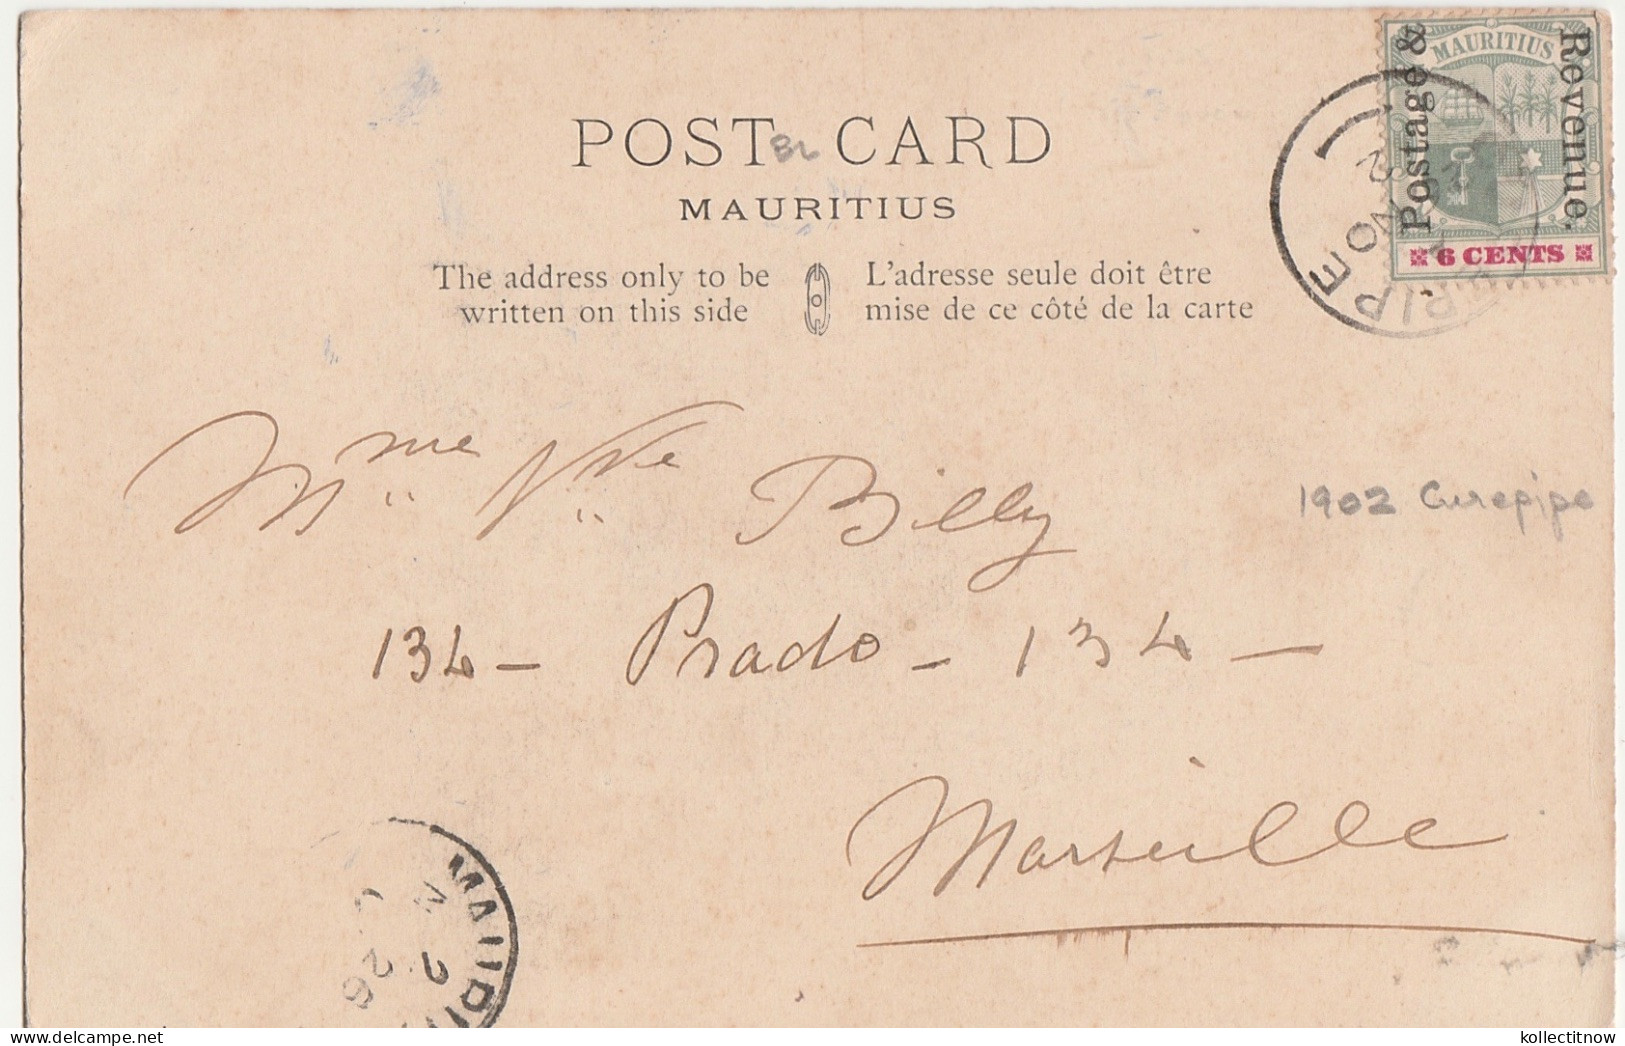 PIETER BOTH - 6 CENT STAMP - 1904 - MAURITIUS - Maurice